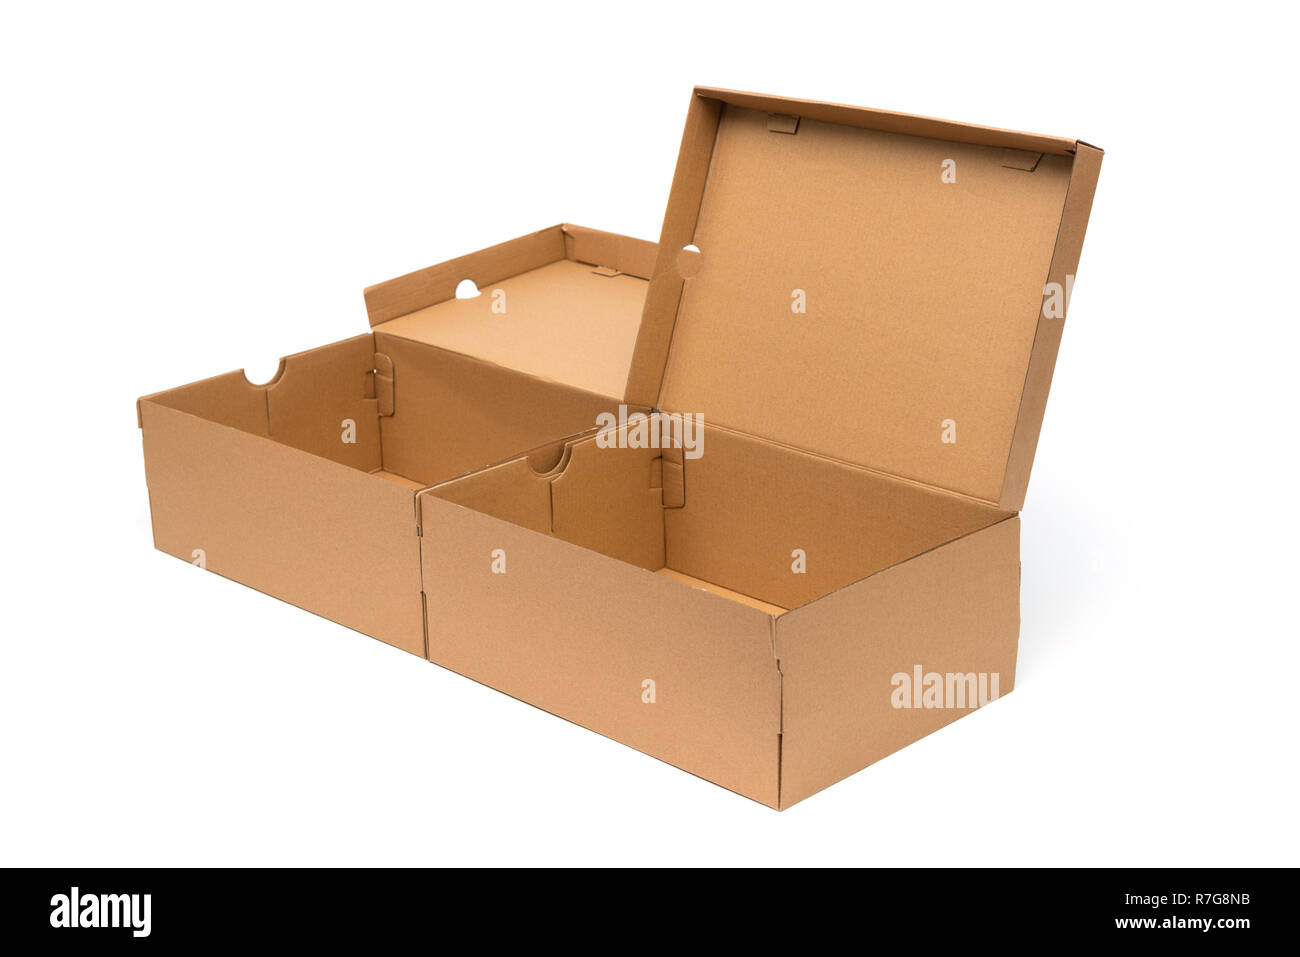 Caja de zapatos de cartón marrón con tapa de zapata o embalaje del producto  zapatillas boceto, aislado sobre fondo blanco con trazado de recorte  Fotografía de stock - Alamy